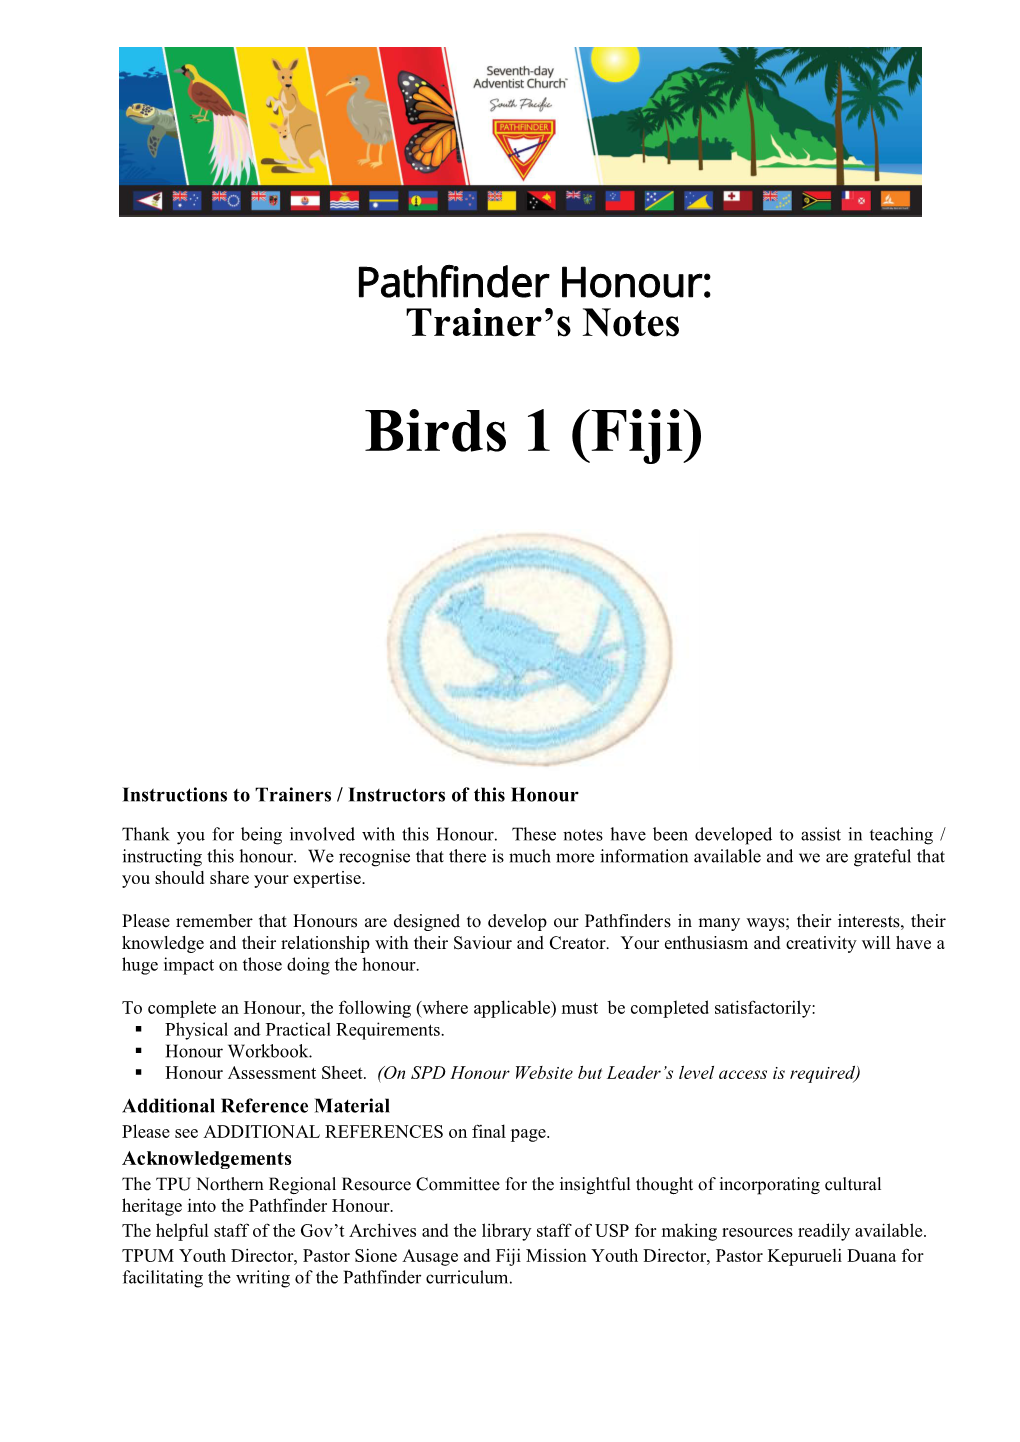 Birds 1 (Fiji)